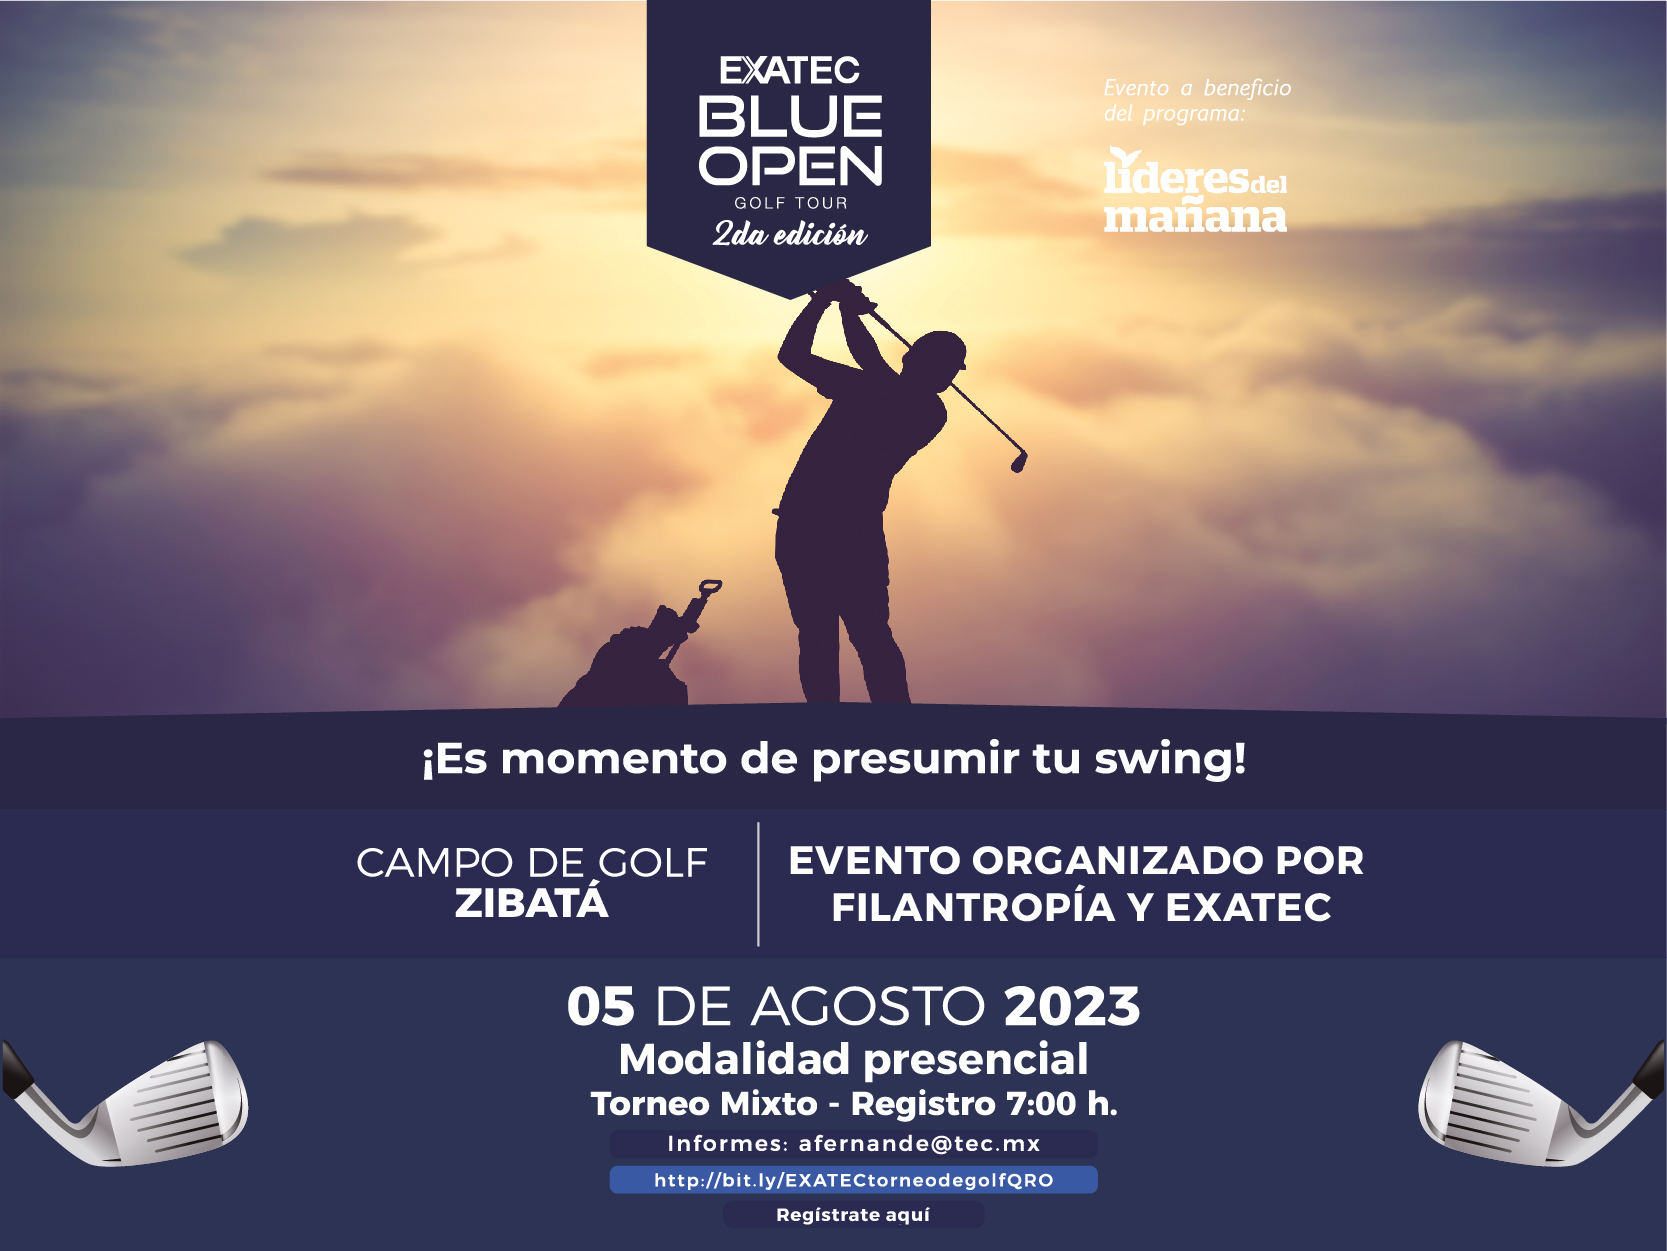 EXATEC Blue Open Golf Tour Querétaro